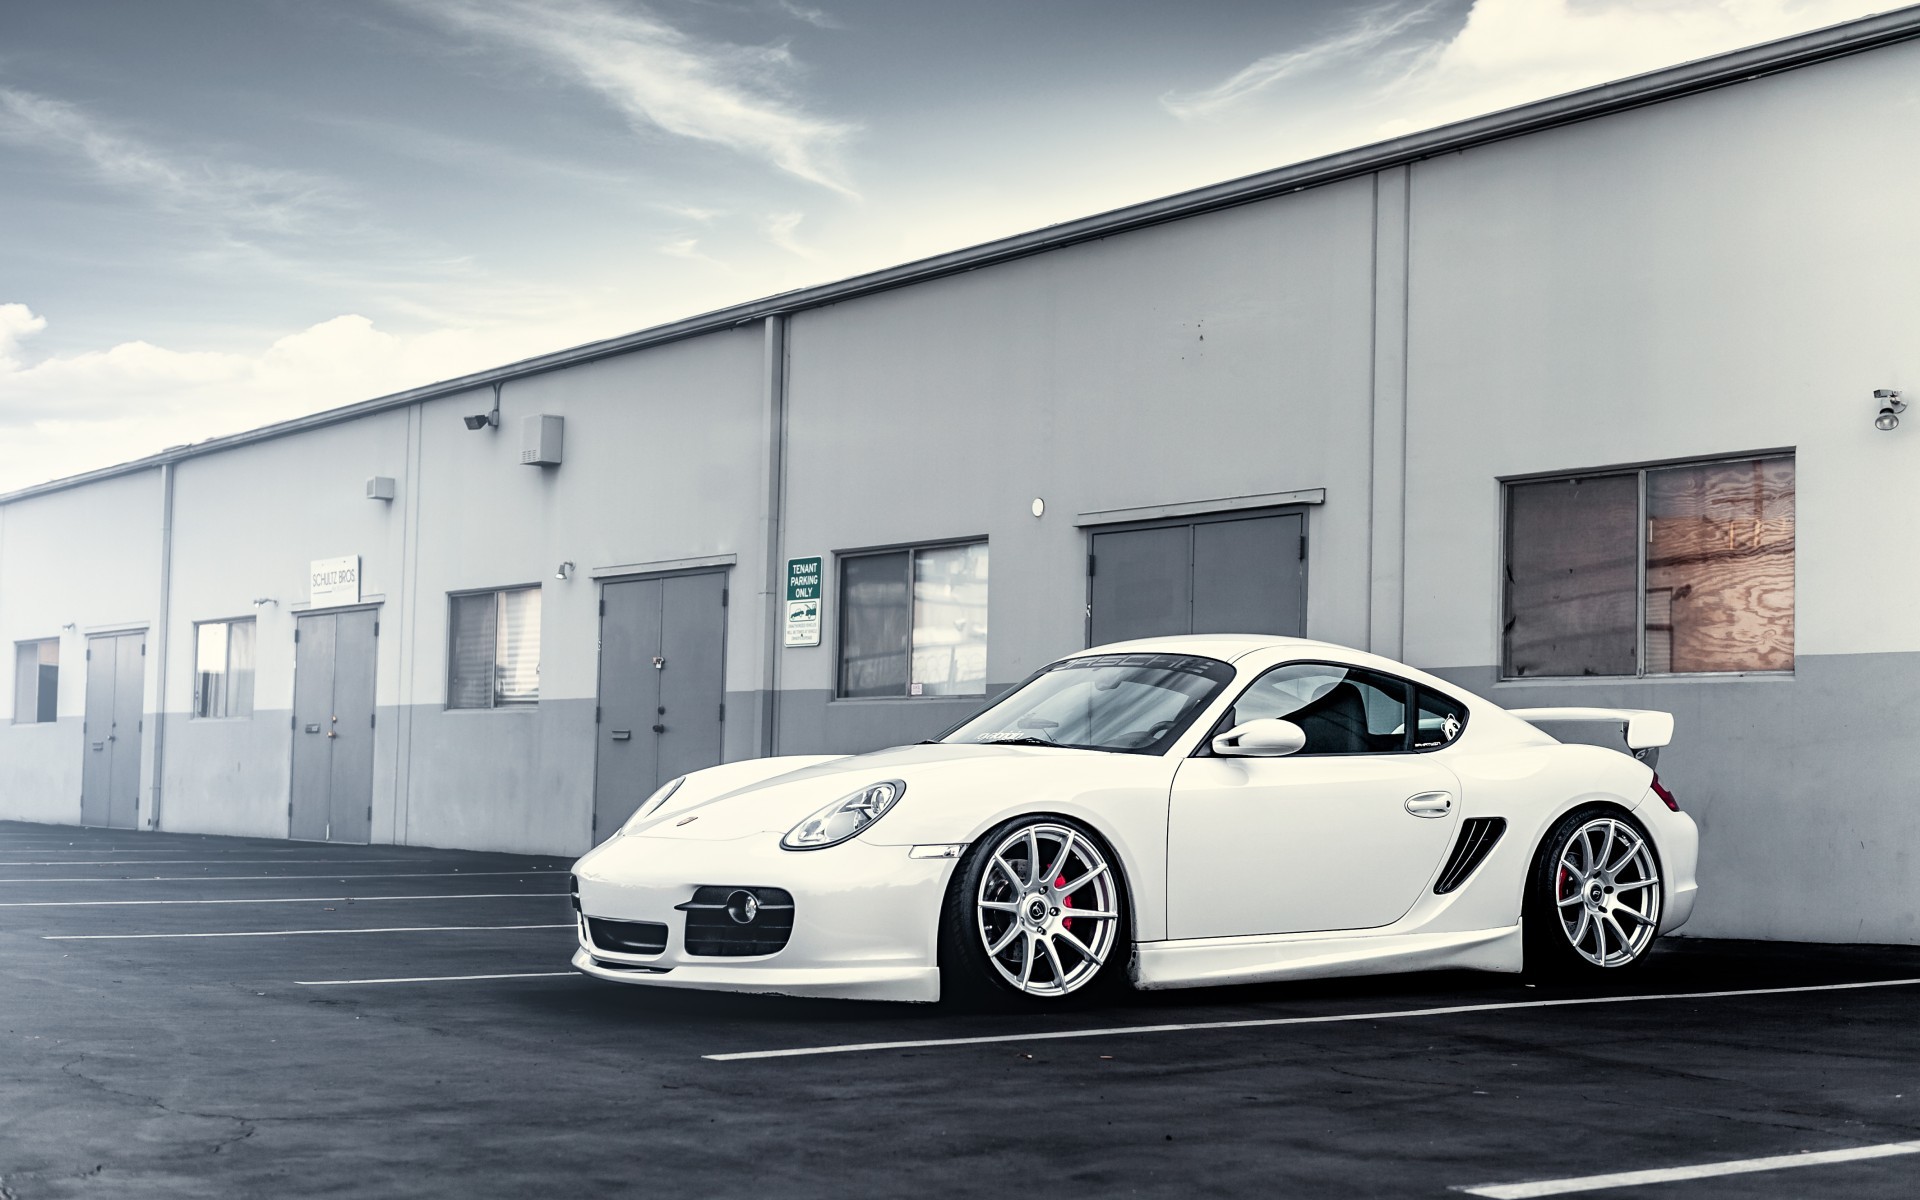 White Porsche in the parking lot